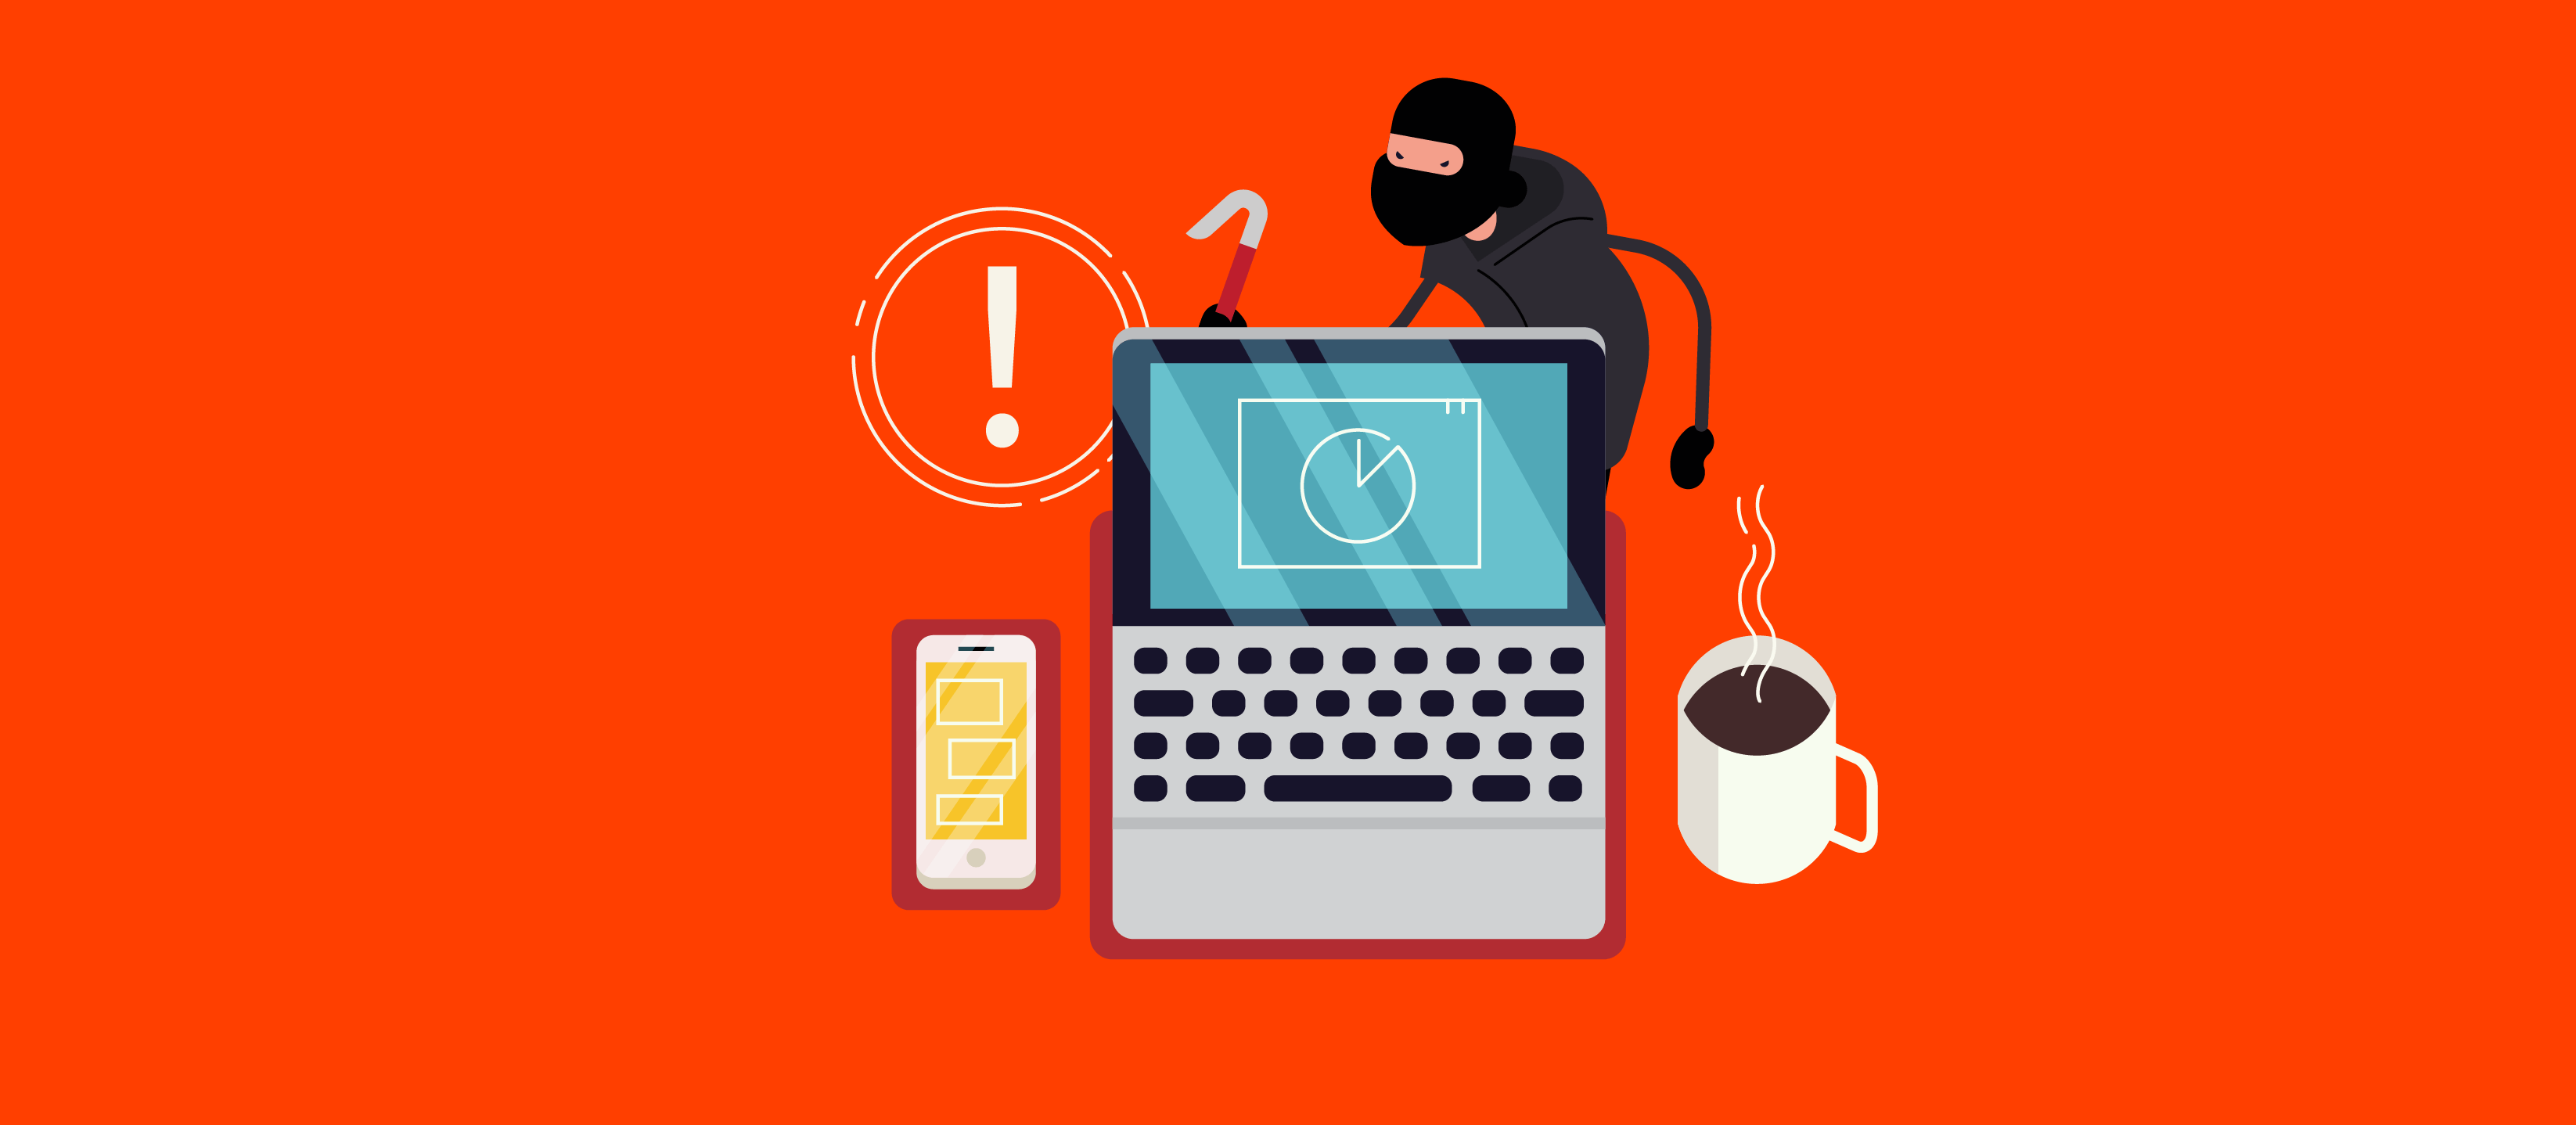 Was ist Cyberkriminalität: Welche sind heute die häufigsten Bedrohungen?